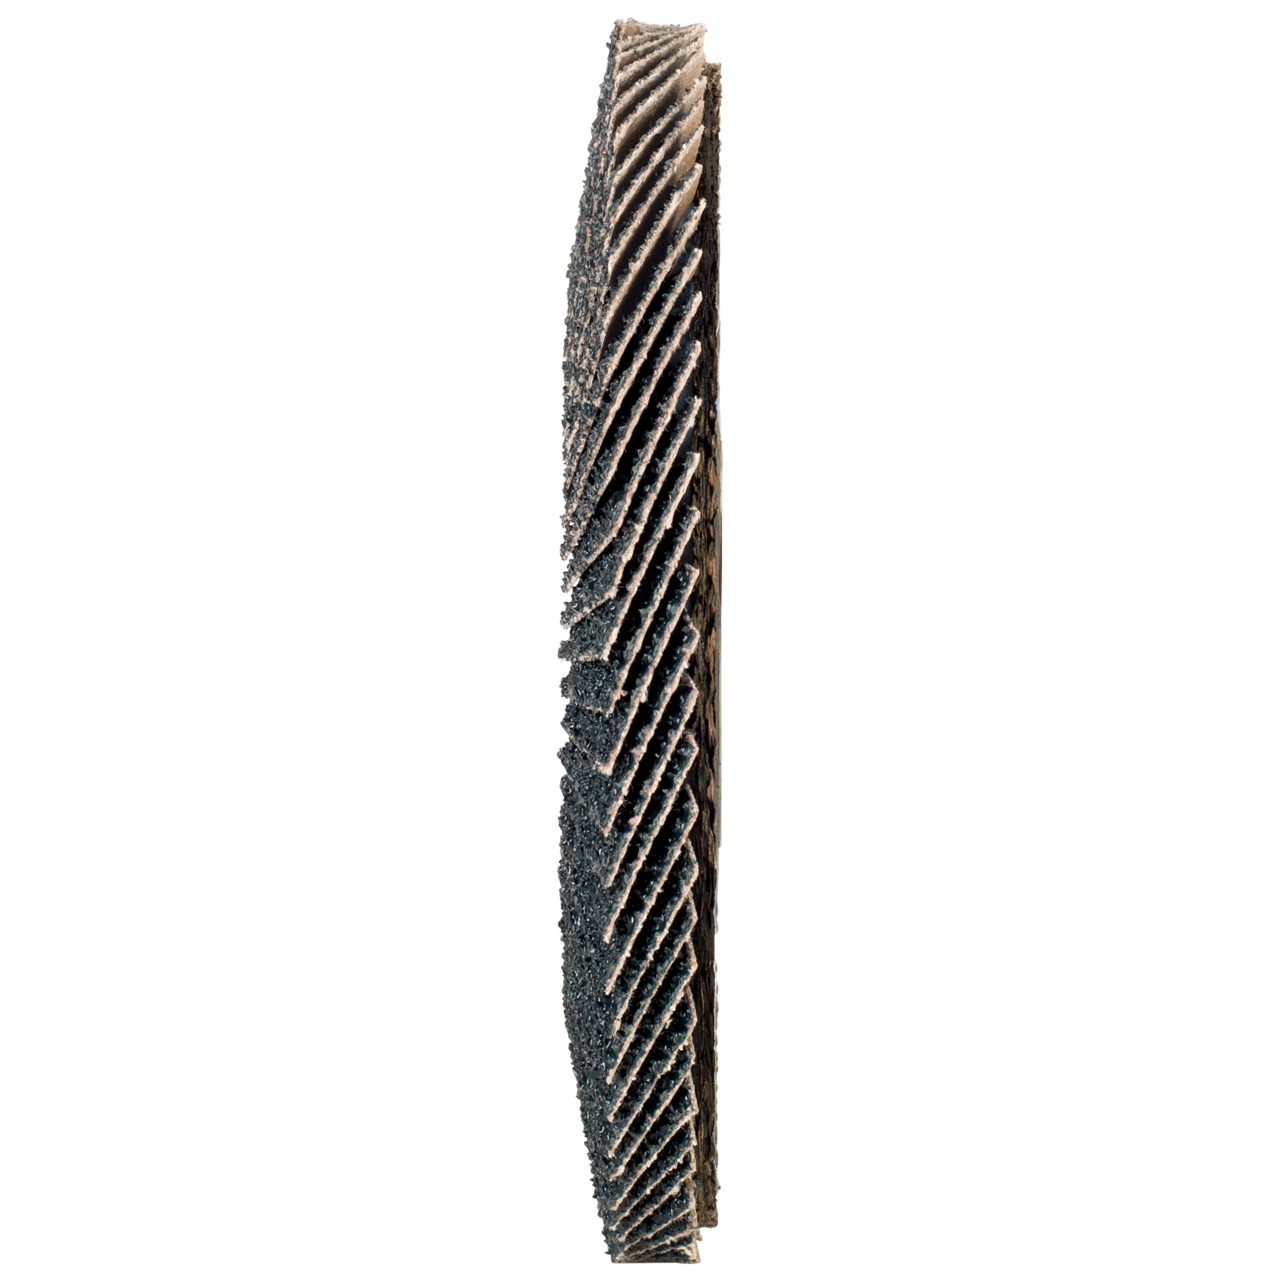 Tyrolit Rondelle éventail DxH 178x22,2in1 pour acier &amp; acier inoxydable, P60, forme : 28A - modèle droit (modèle à corps en fibre de verre), art. 668697